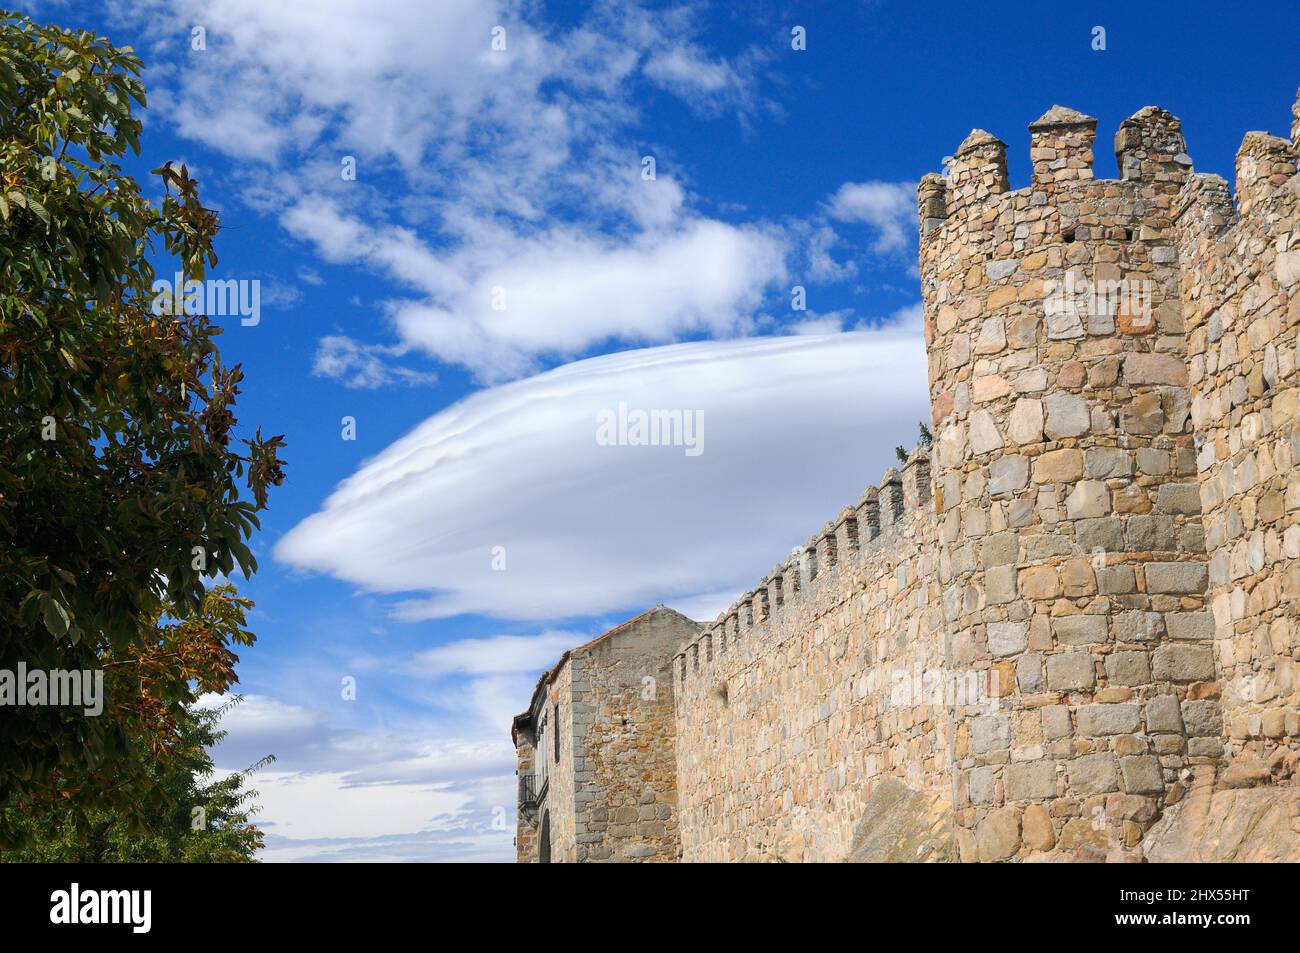 Formation de nuages lenticulaires (Altocumulus lenticularis) sur les murs médiévaux de la ville d'Avila, Castilla y Leon, Espagne, Europe. Banque D'Images